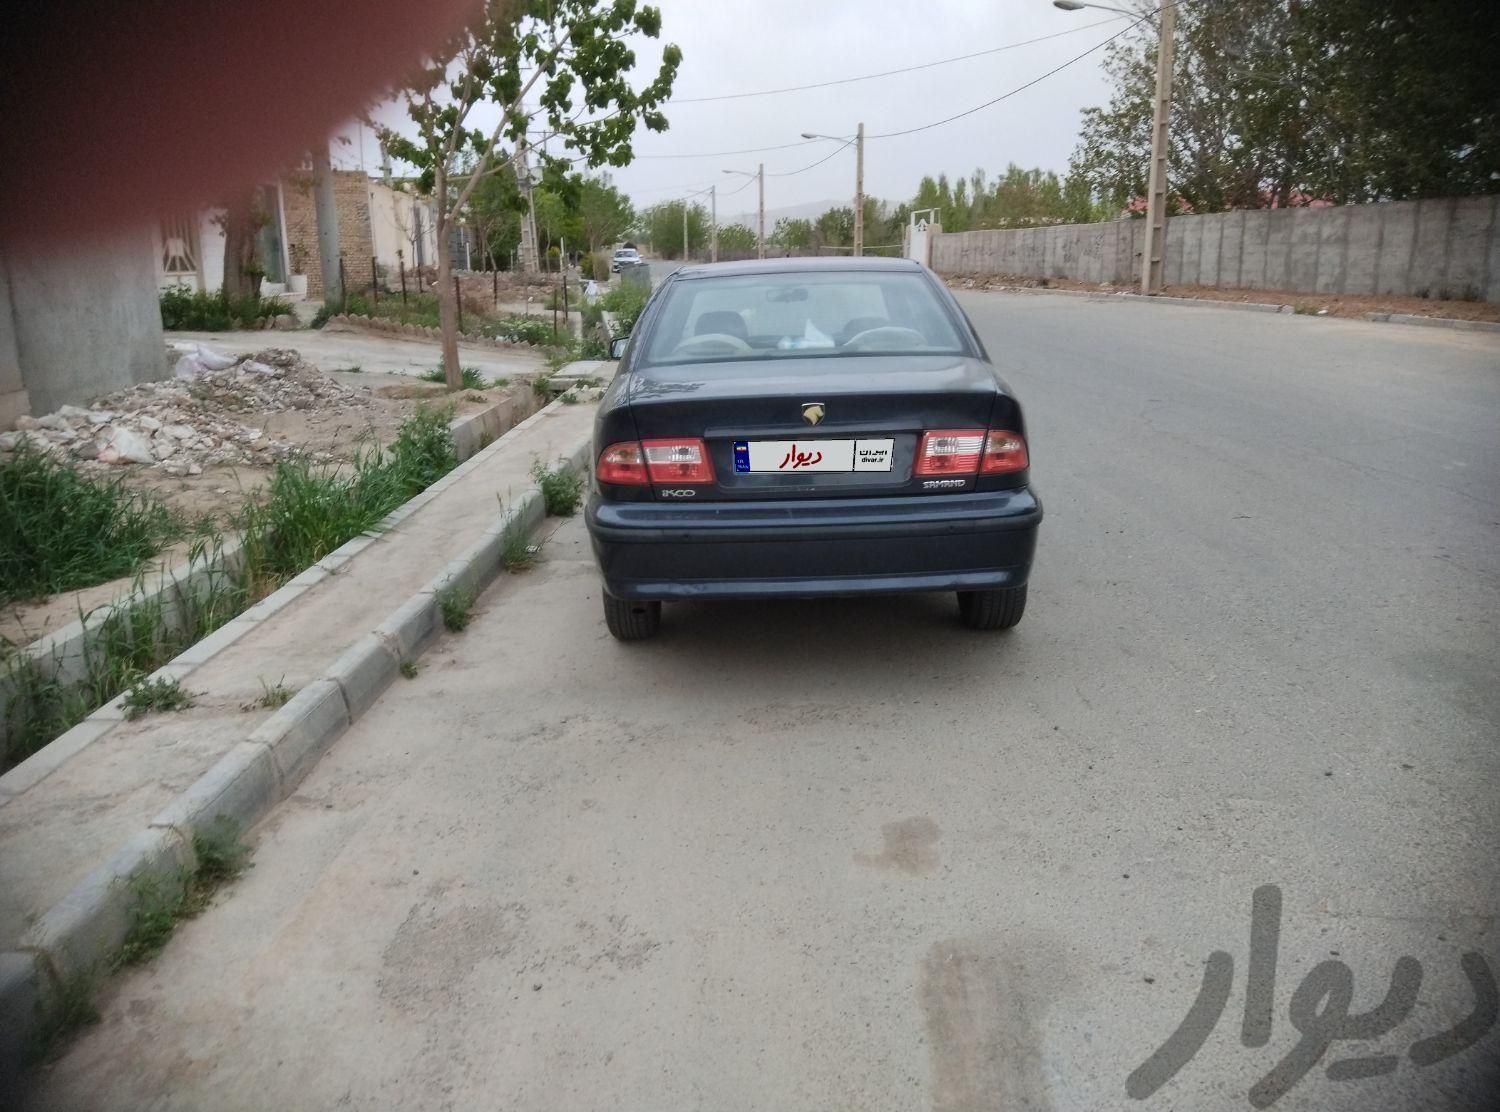 سمند LX EF7 بنزینی، مدل ۱۳۹۳|سواری و وانت|تهران, شریف‌آباد|دیوار